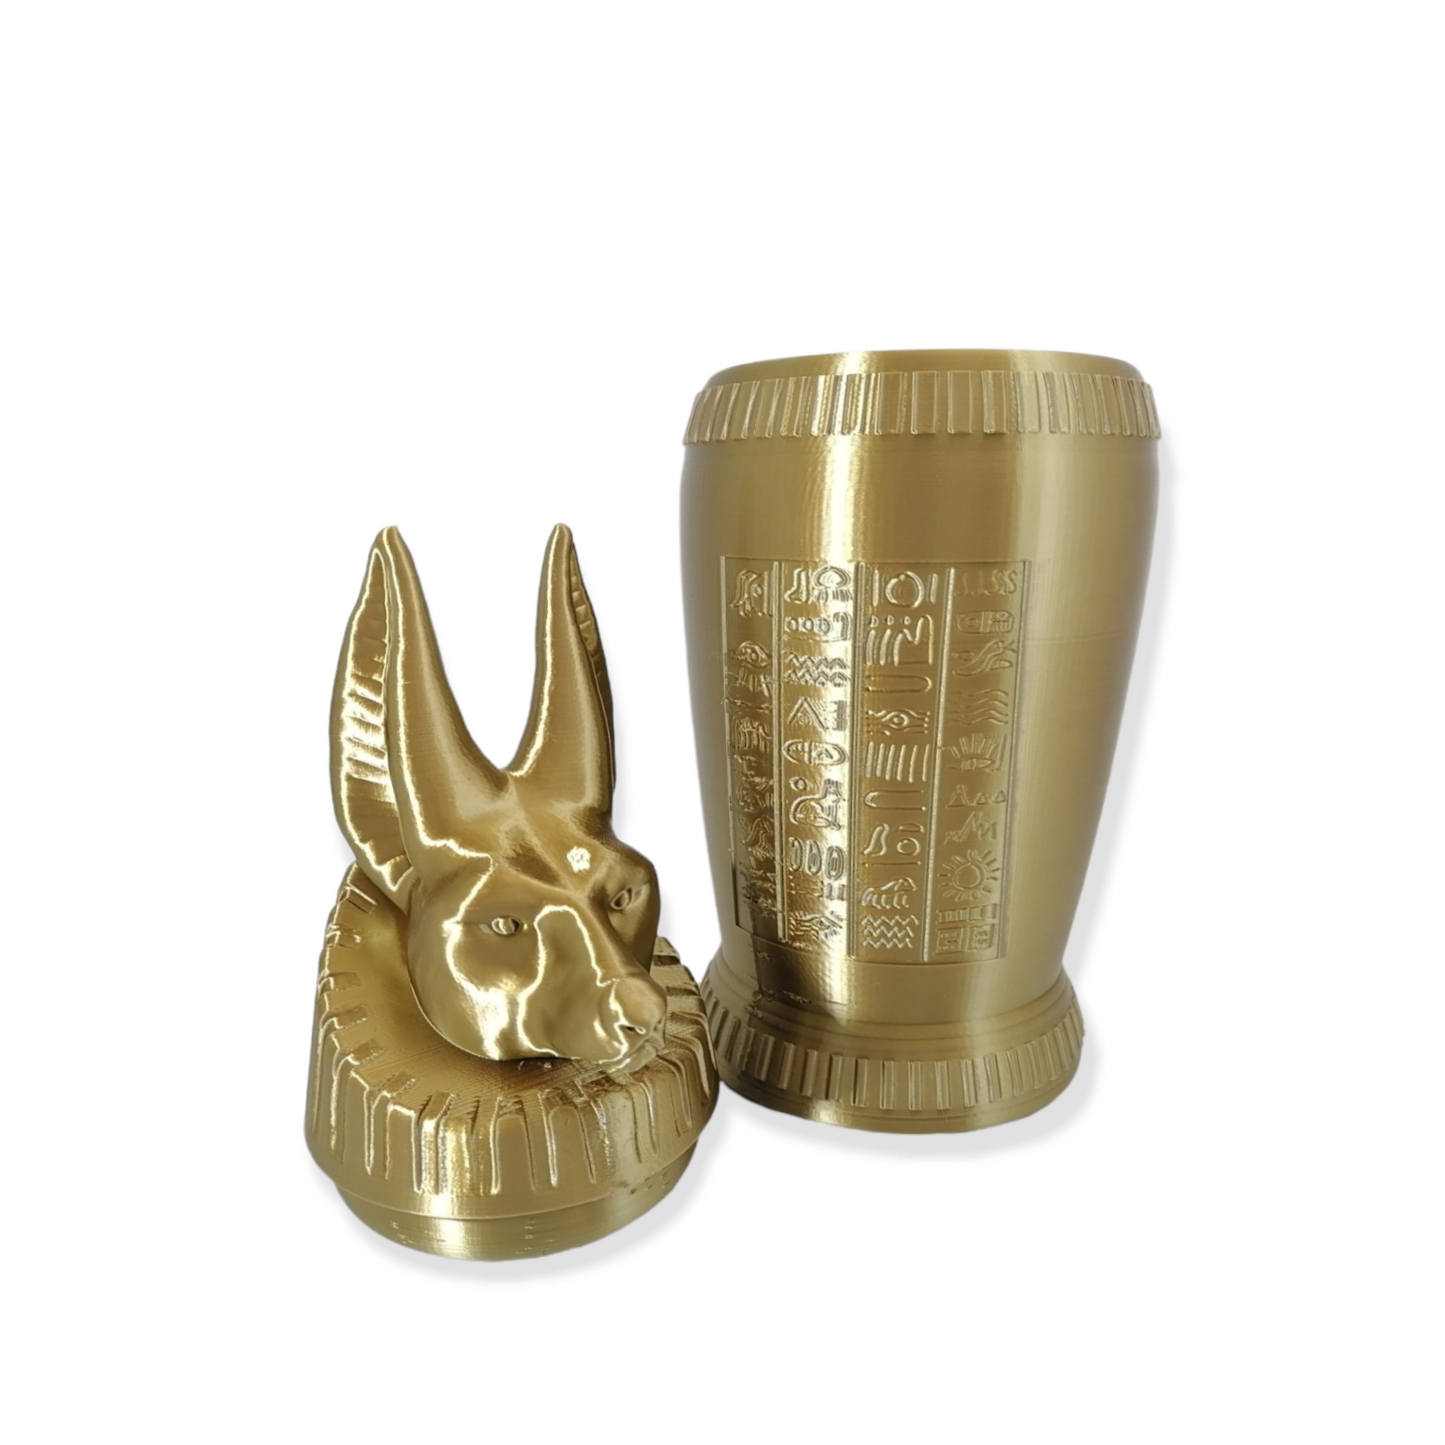 Large ANUBIS CANOPIC JAR - Museum Artifact - 3D Printed